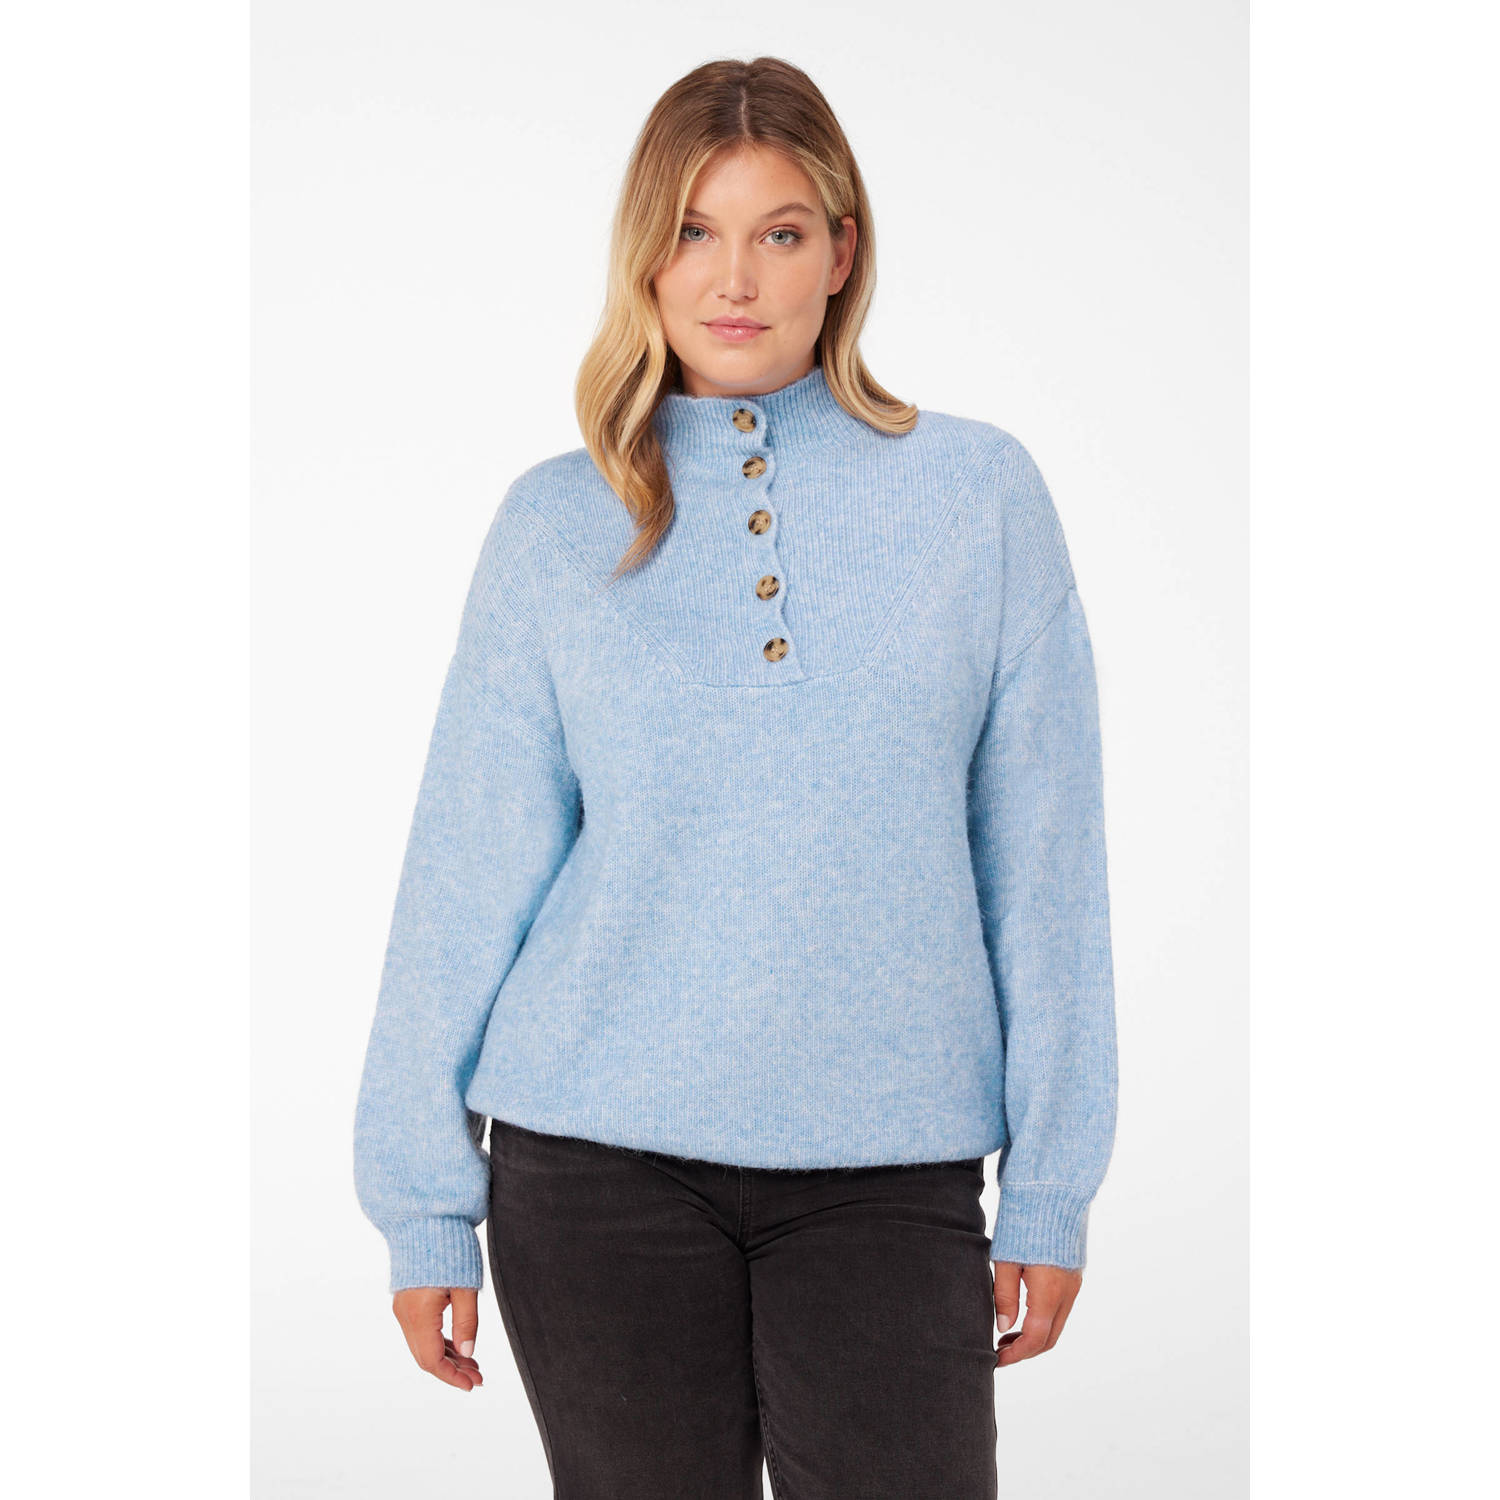 Miljuschka by Wehkamp trui met henleykraag lichtblauw